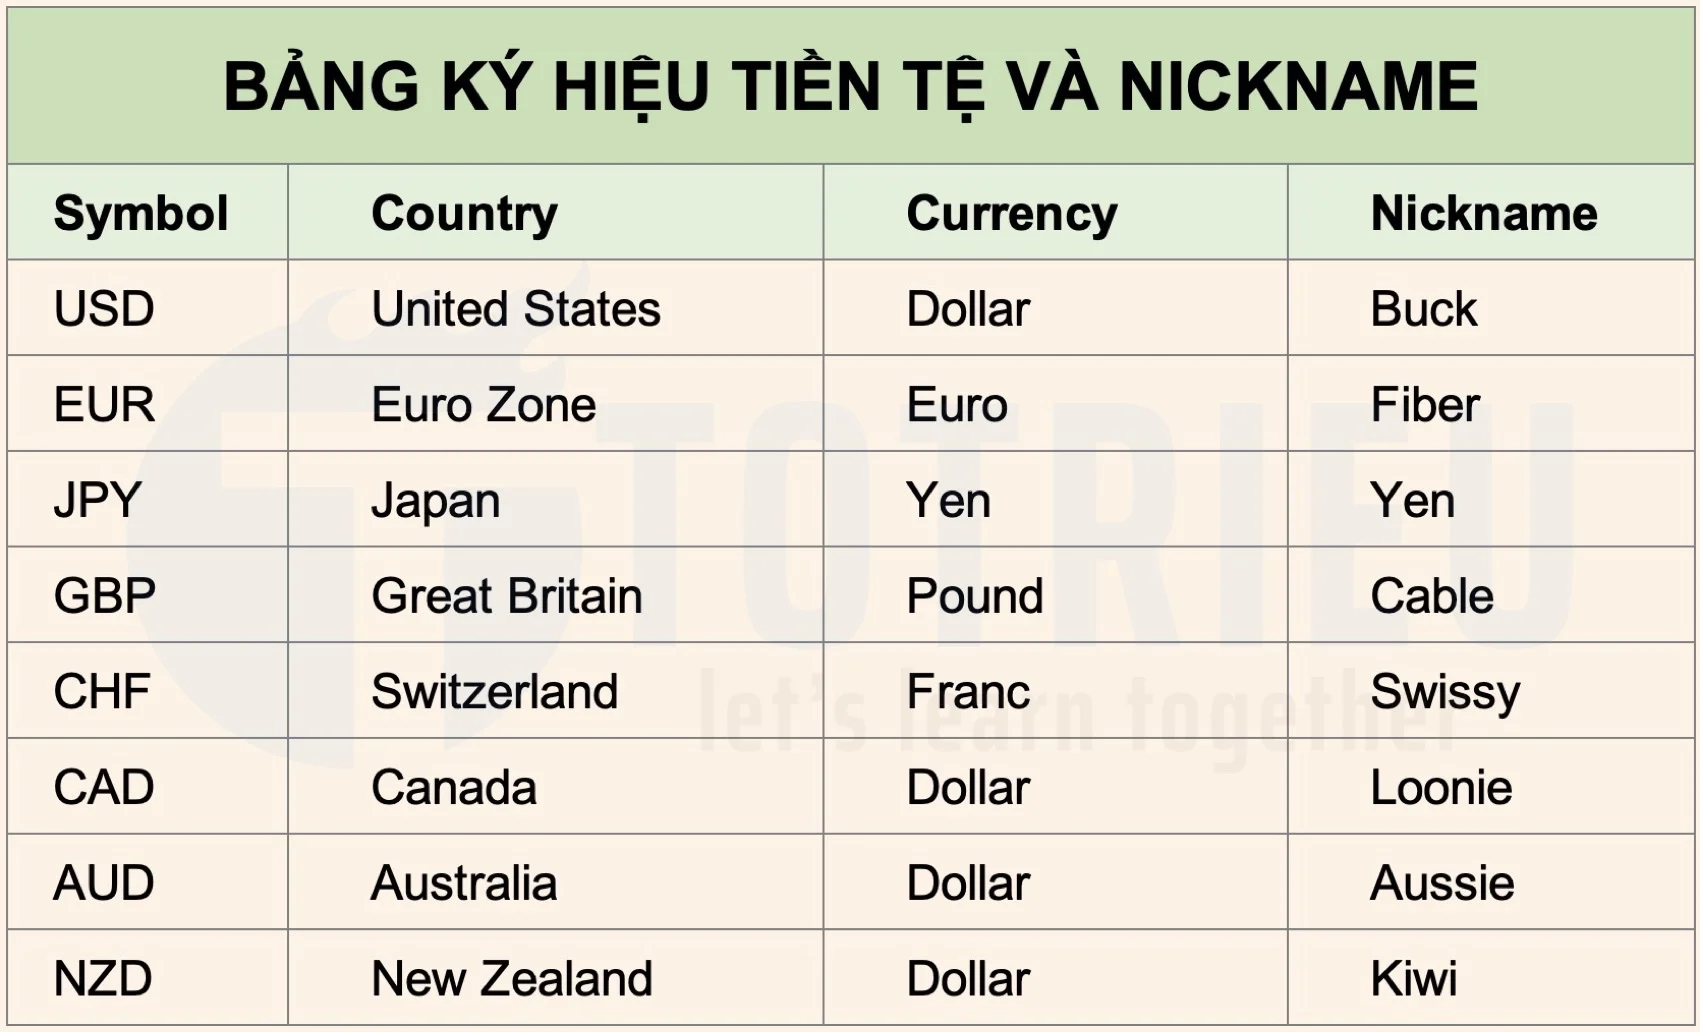 Bảng ký hiệu các loại tiền tệ chính trên thị trường ngoại hối theo Tiêu chuẩn ISO 4217 và Nickname